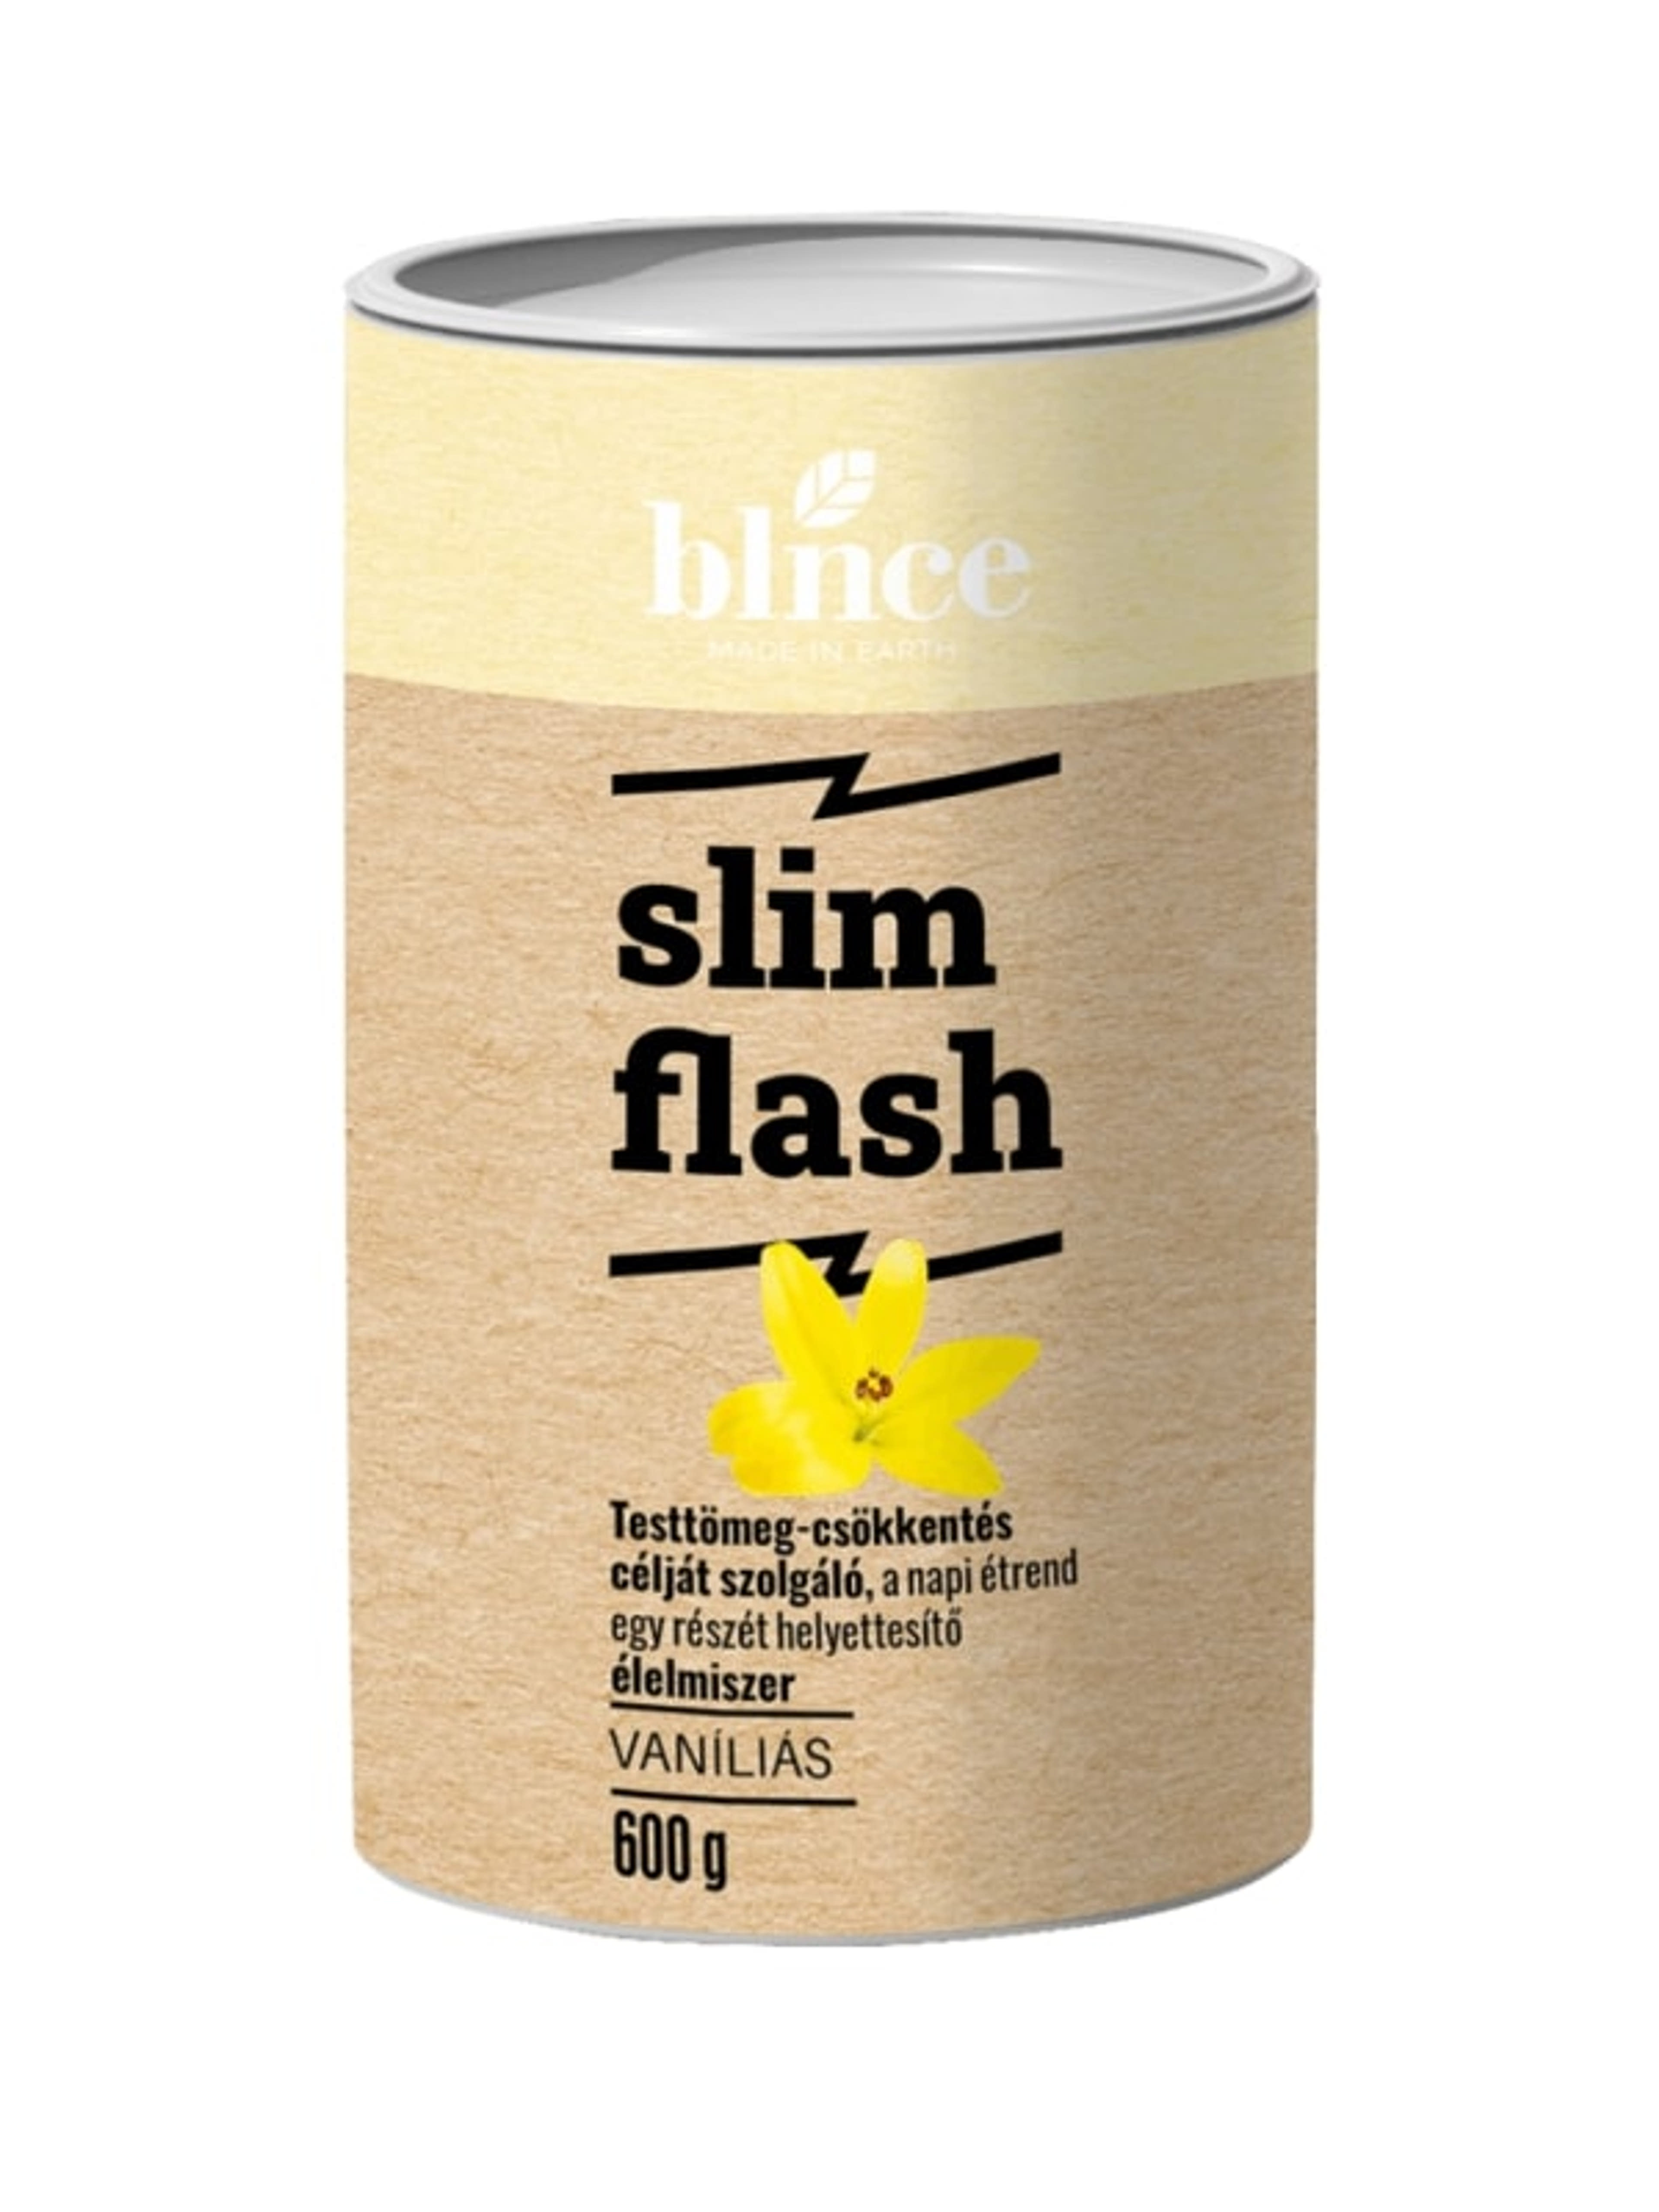 Blnce Active Slim Flash, vaníliás - 600 g